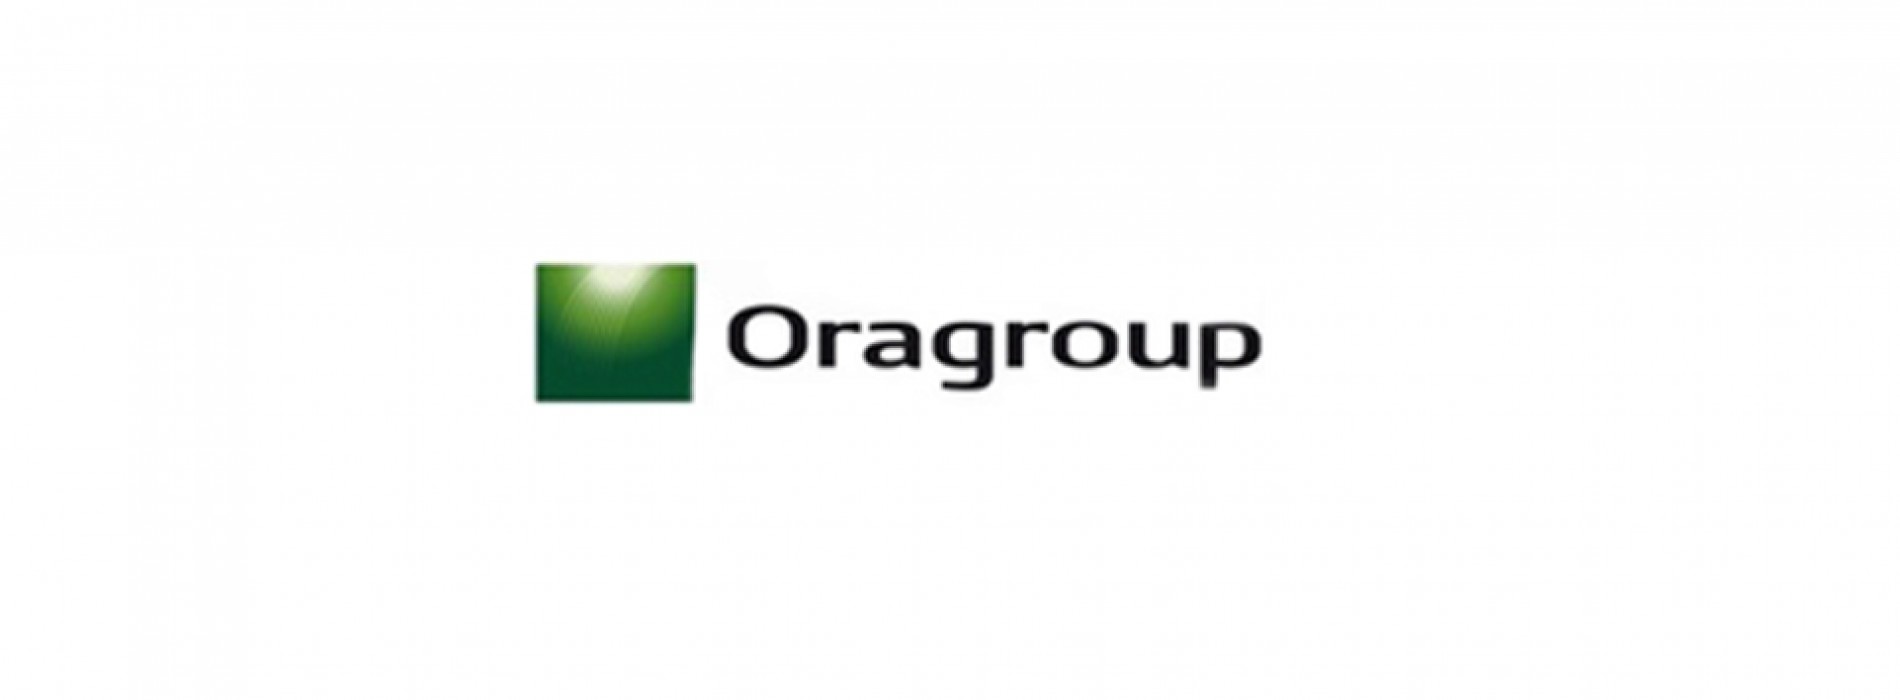 Marché financier : Oragroup lance une émission sur le marché UEMOA pour financer son développement